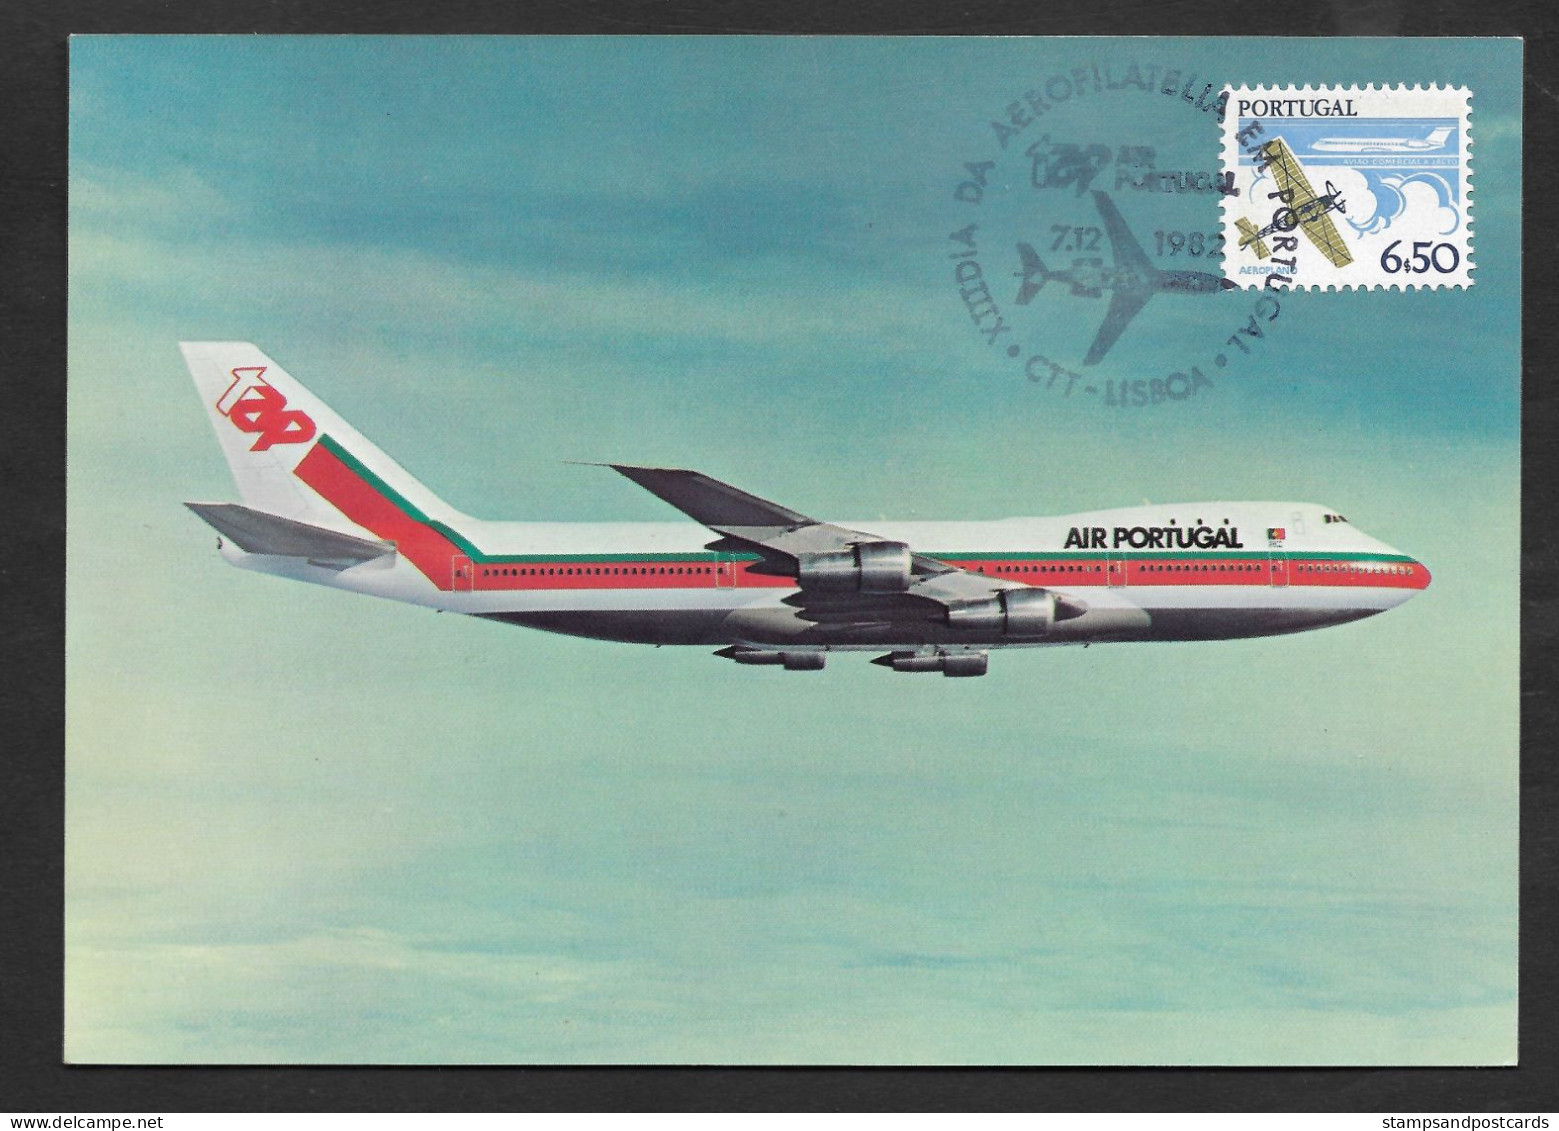 Portugal Avion TAP Air Portugal Carte Postale Maximum 1982 Airplane Airline QSL Postcard Maxicard - Airplanes